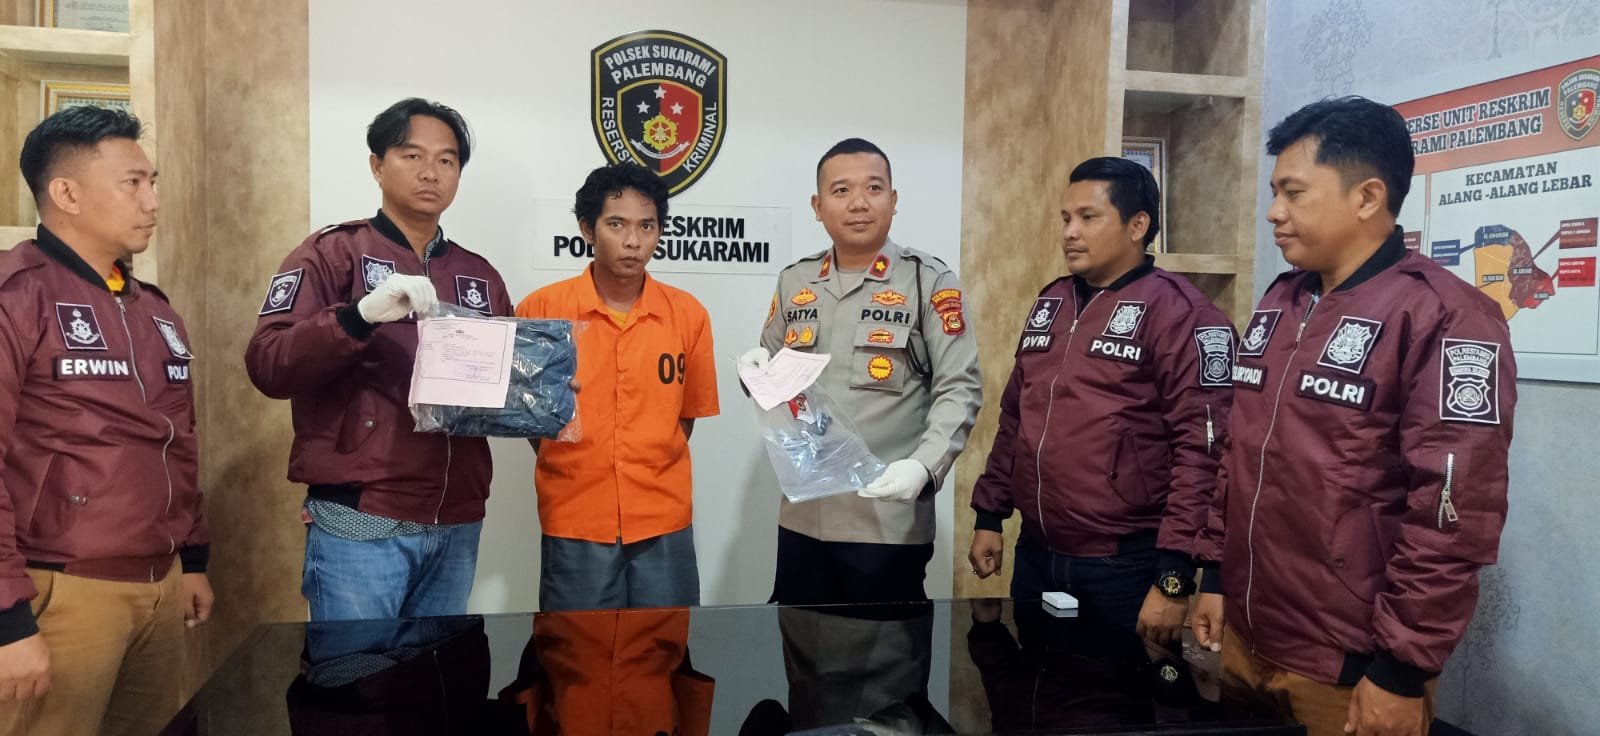 Pelaku pembunuhan terhadap Novansyah di salah satu kafe kawasan Jalan Soekarno-Hatta ditangkap polisi